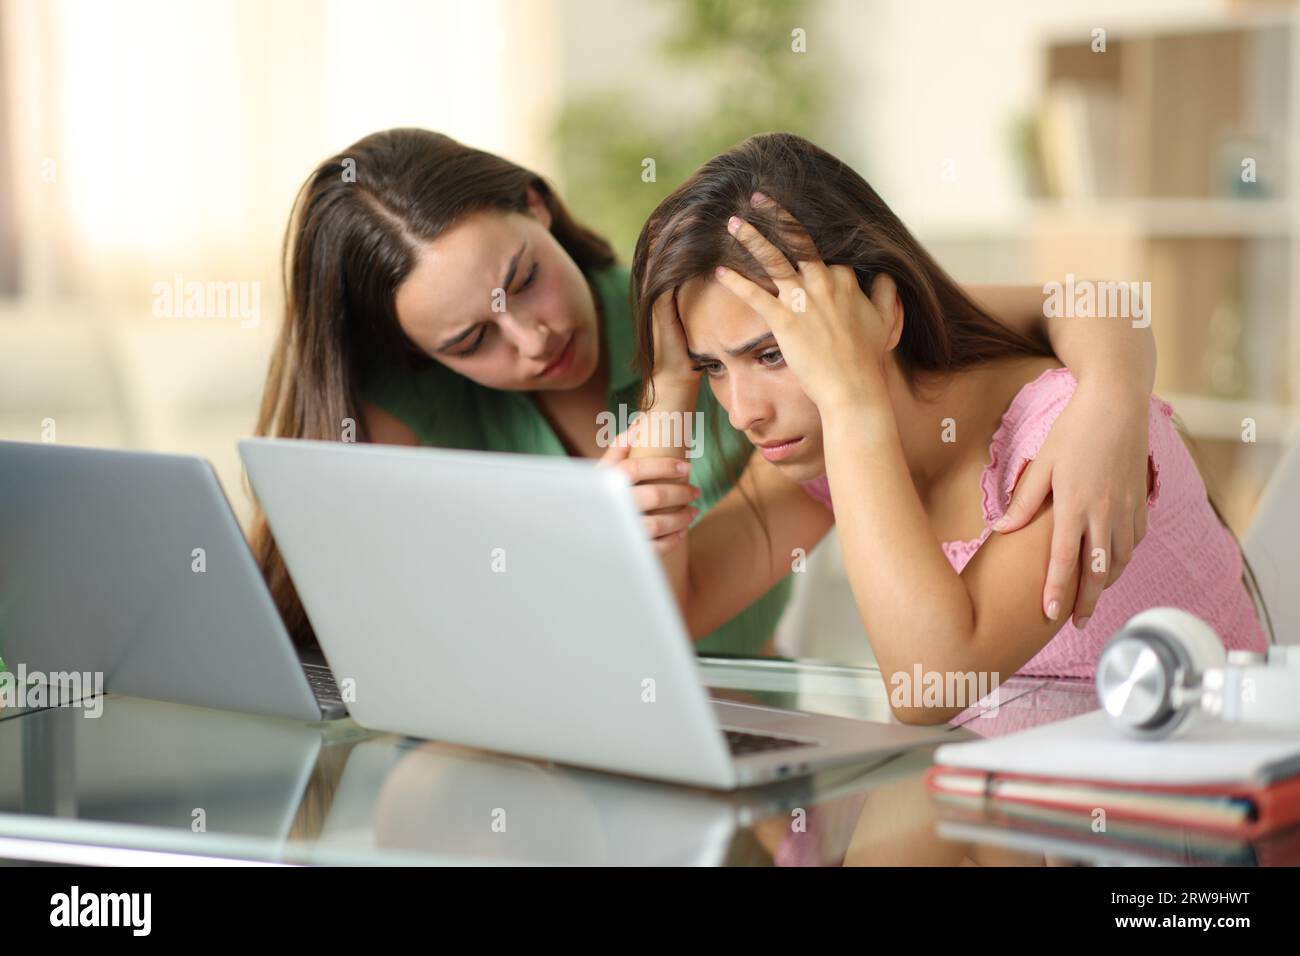 Triste étudiant étant réconforté par un autre vérifiant son ordinateur portable à la maison Banque D'Images